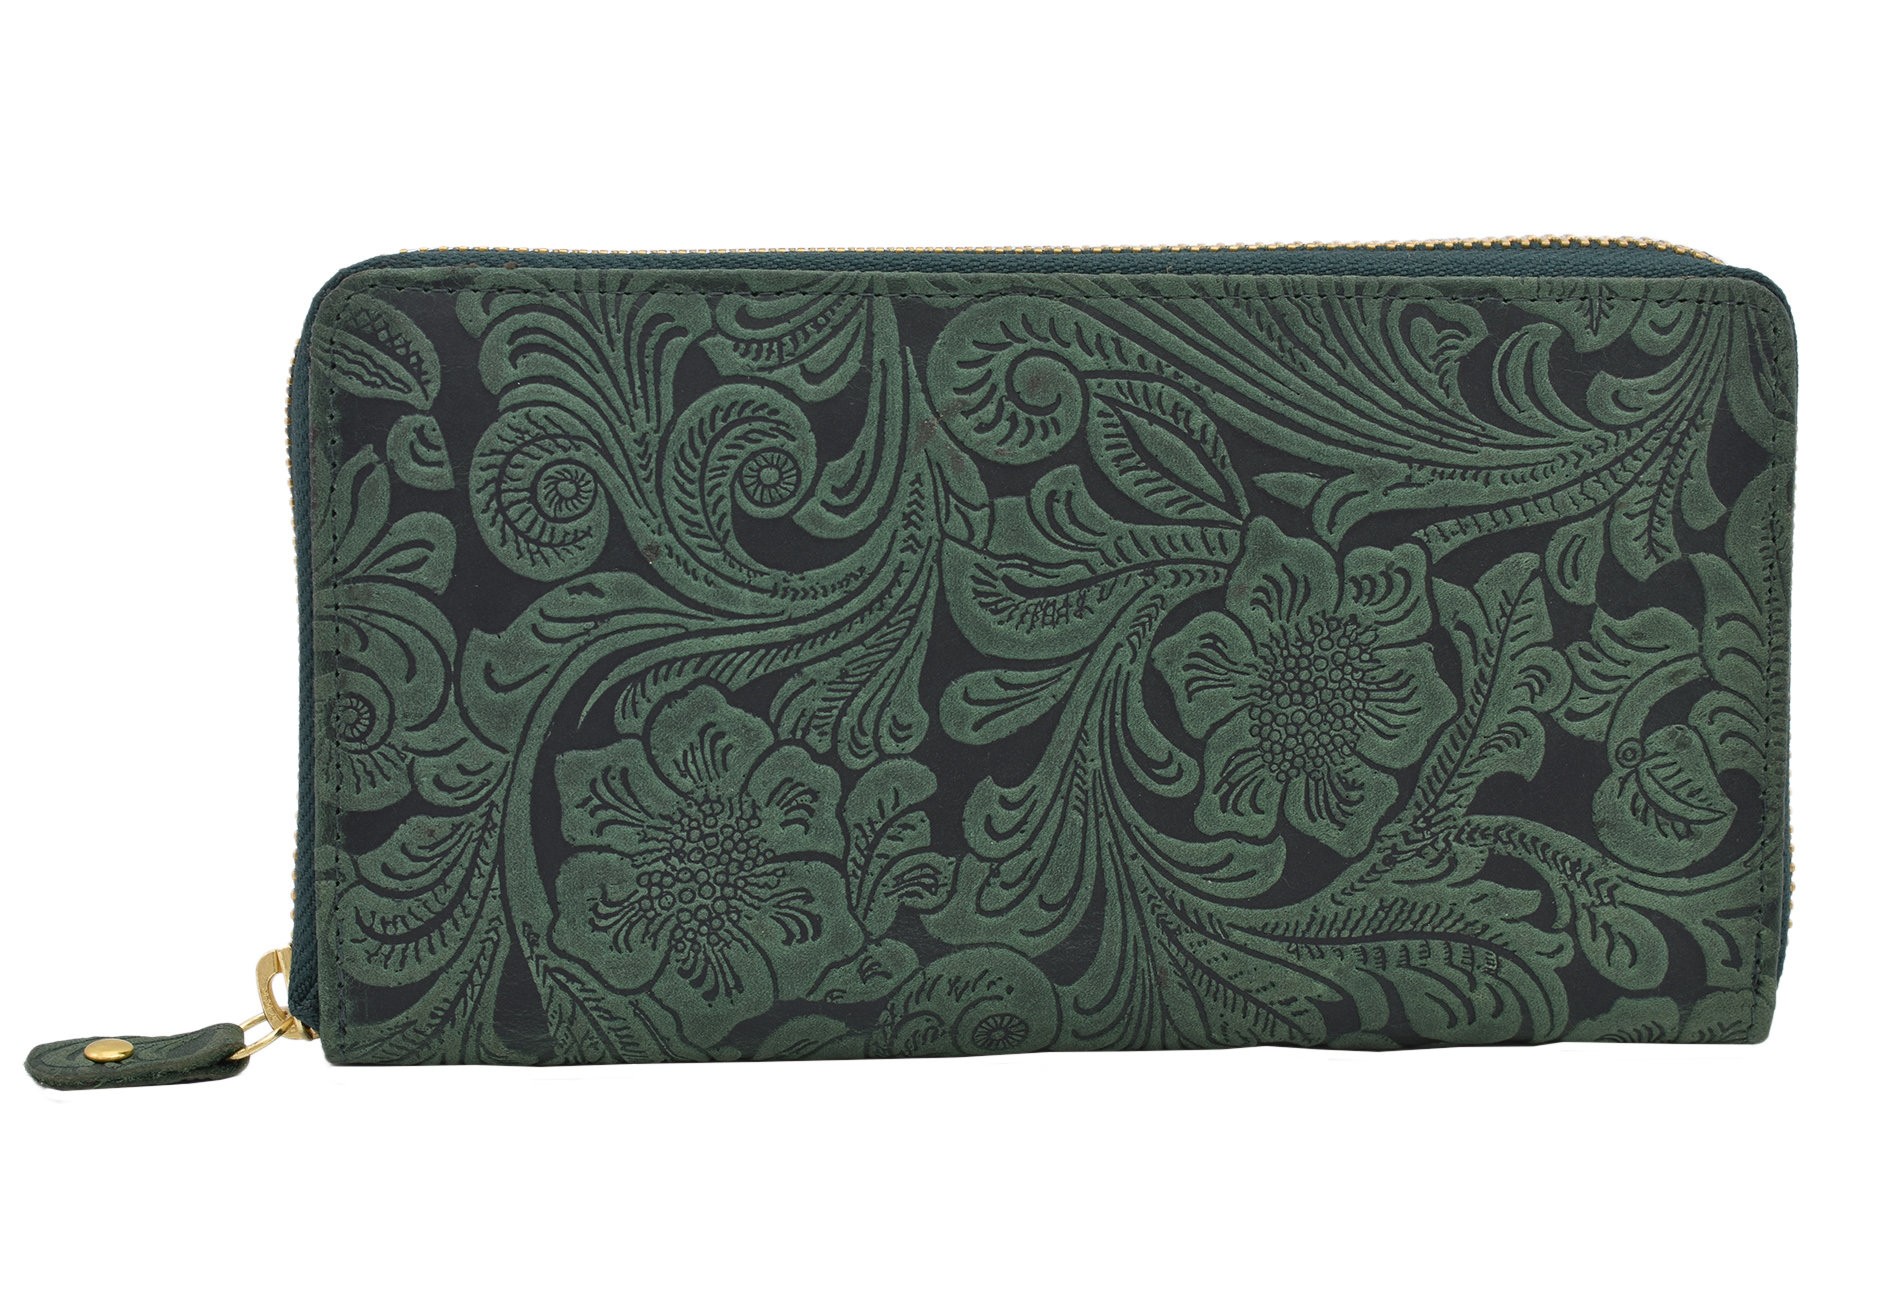 Zelená zipová dlouhá dámská peněženka Gardenia